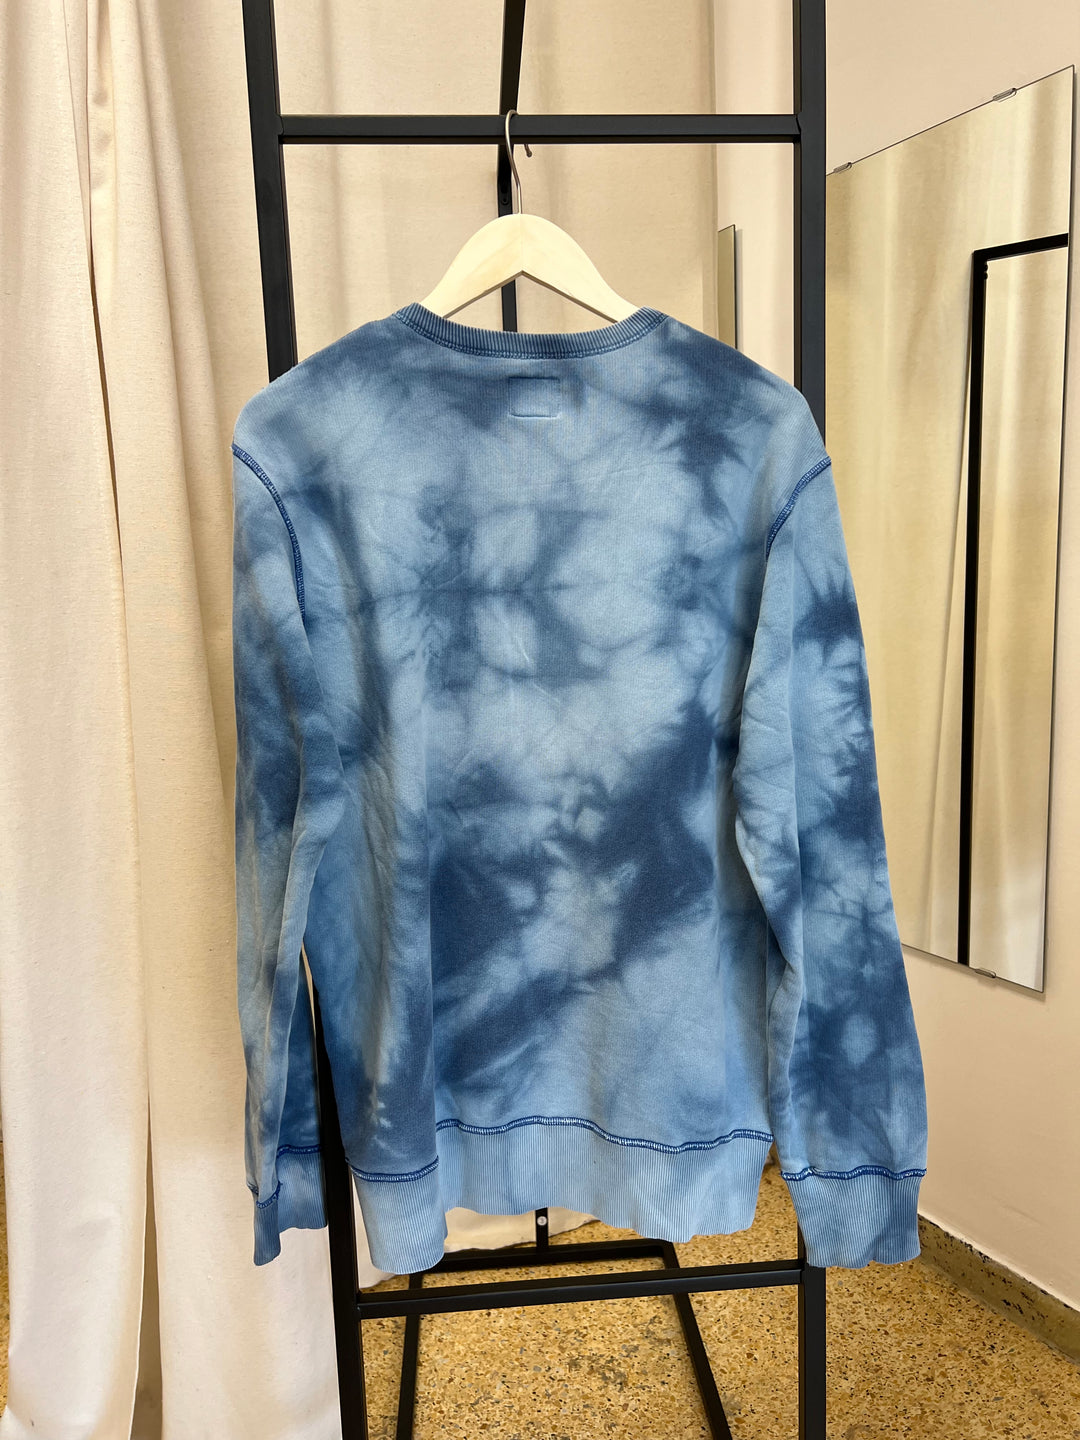 Energie Vintage Tie Dye Sweatshirt Men’s M/L